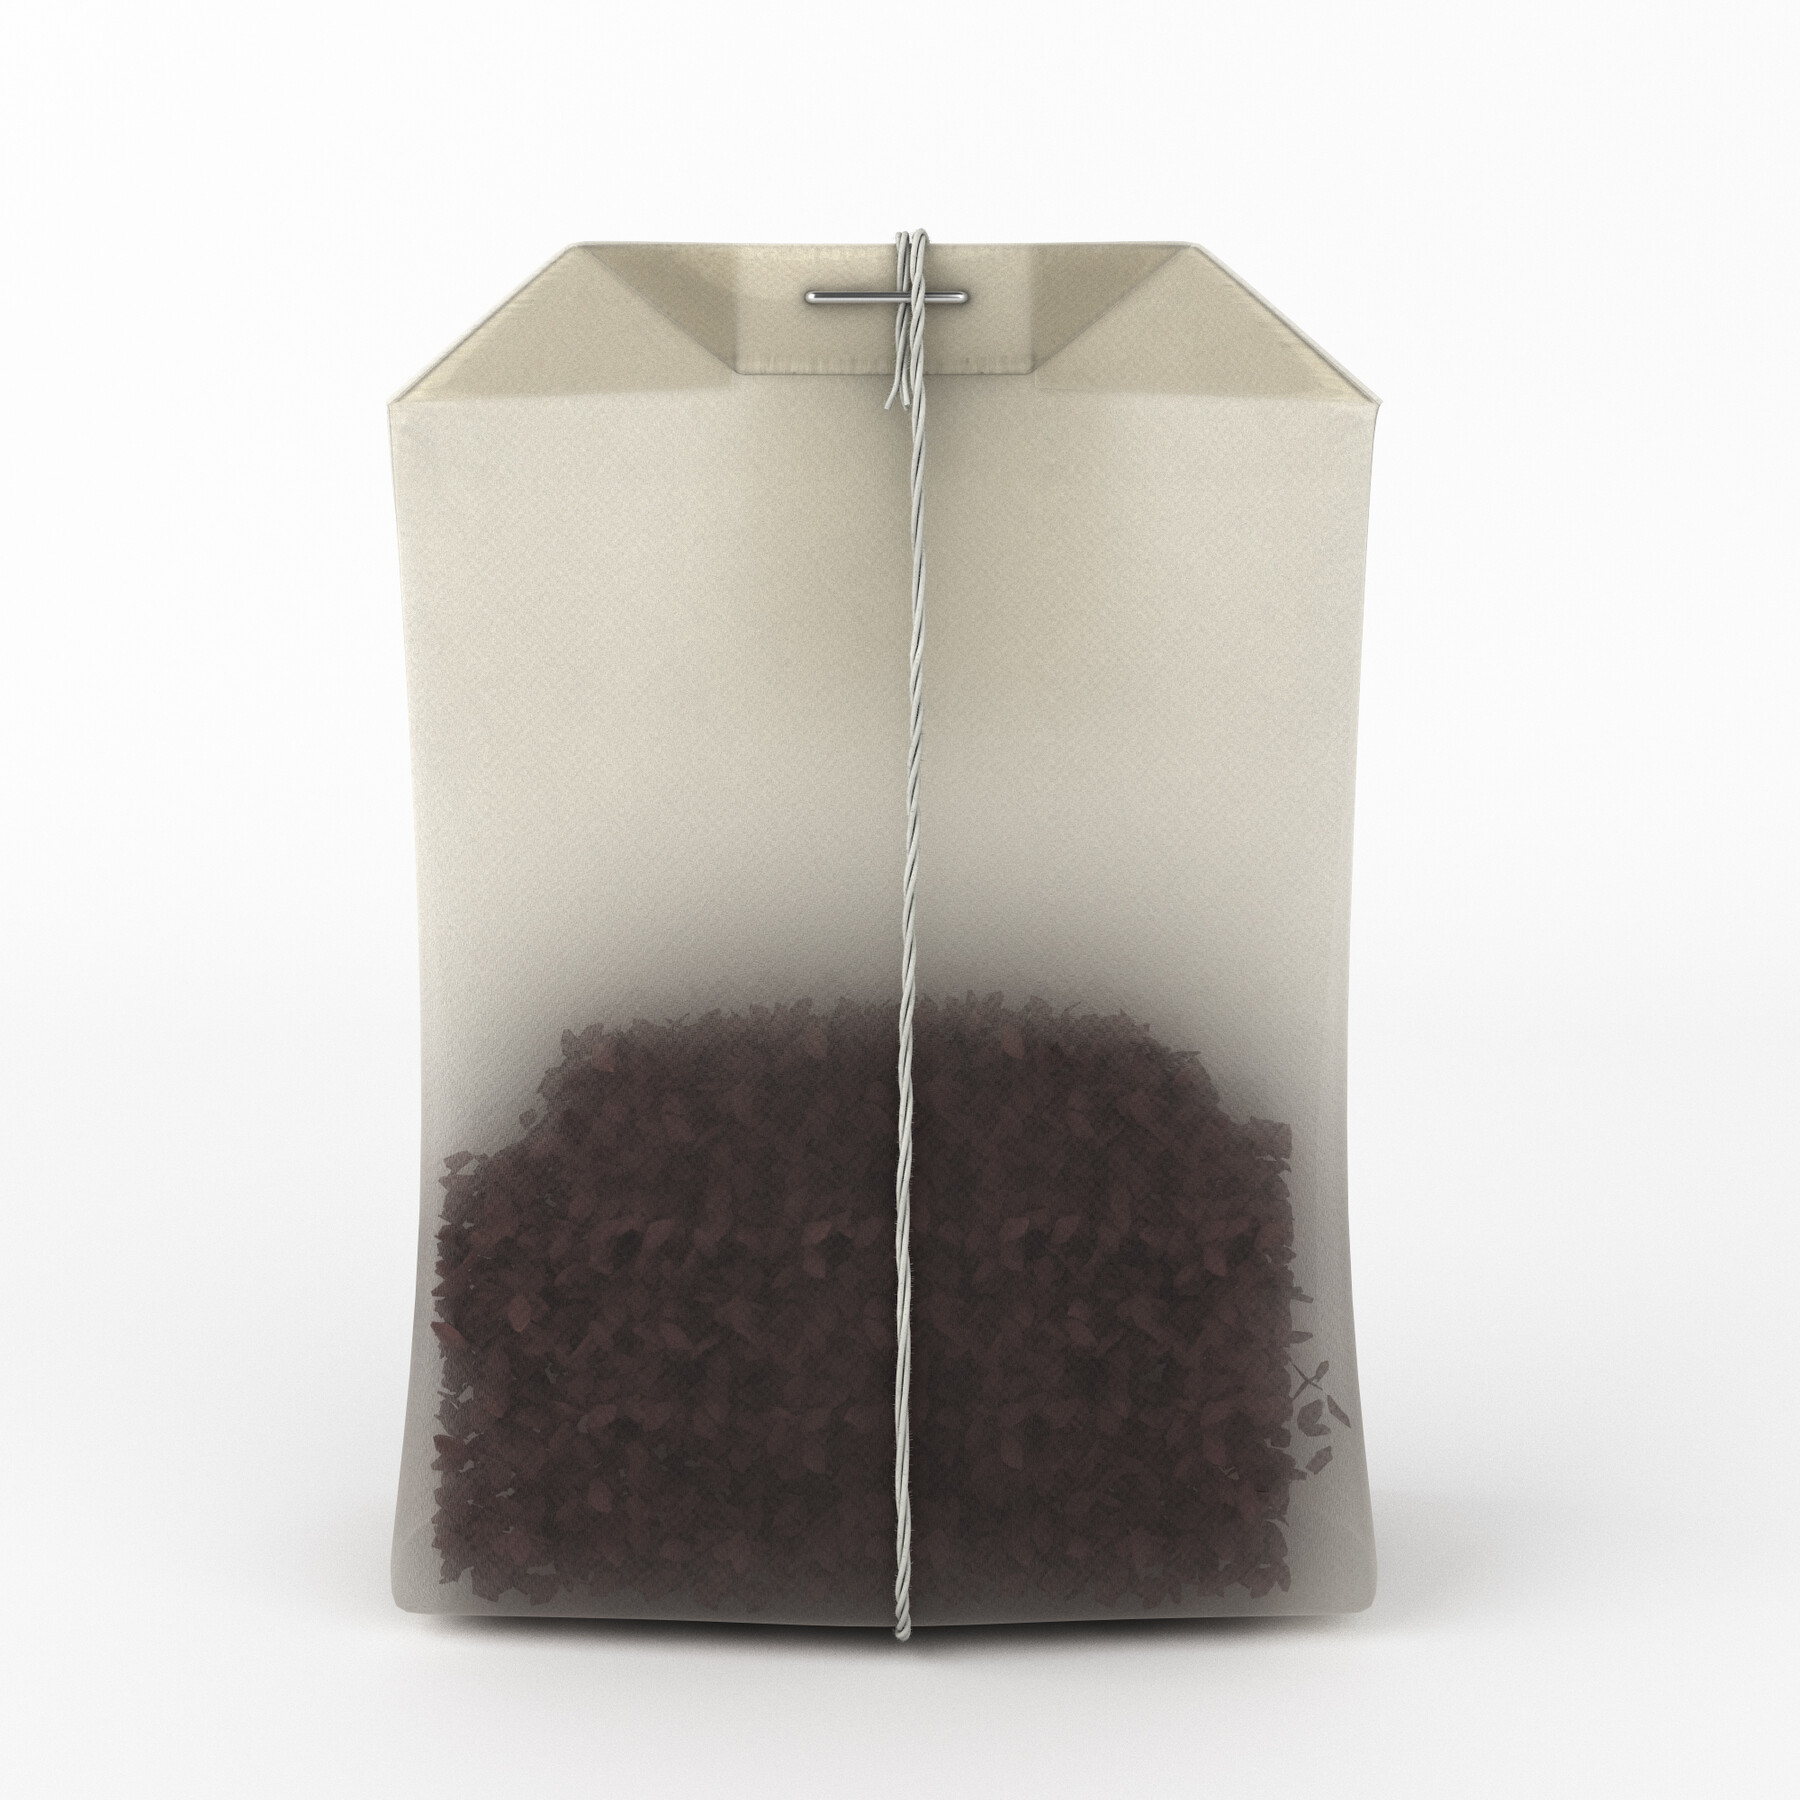 Чайный пакетик для 3д печати. Чайный пакетик 3д модель. Tea bagging 3d. Чай в пакетиках 3 в 1